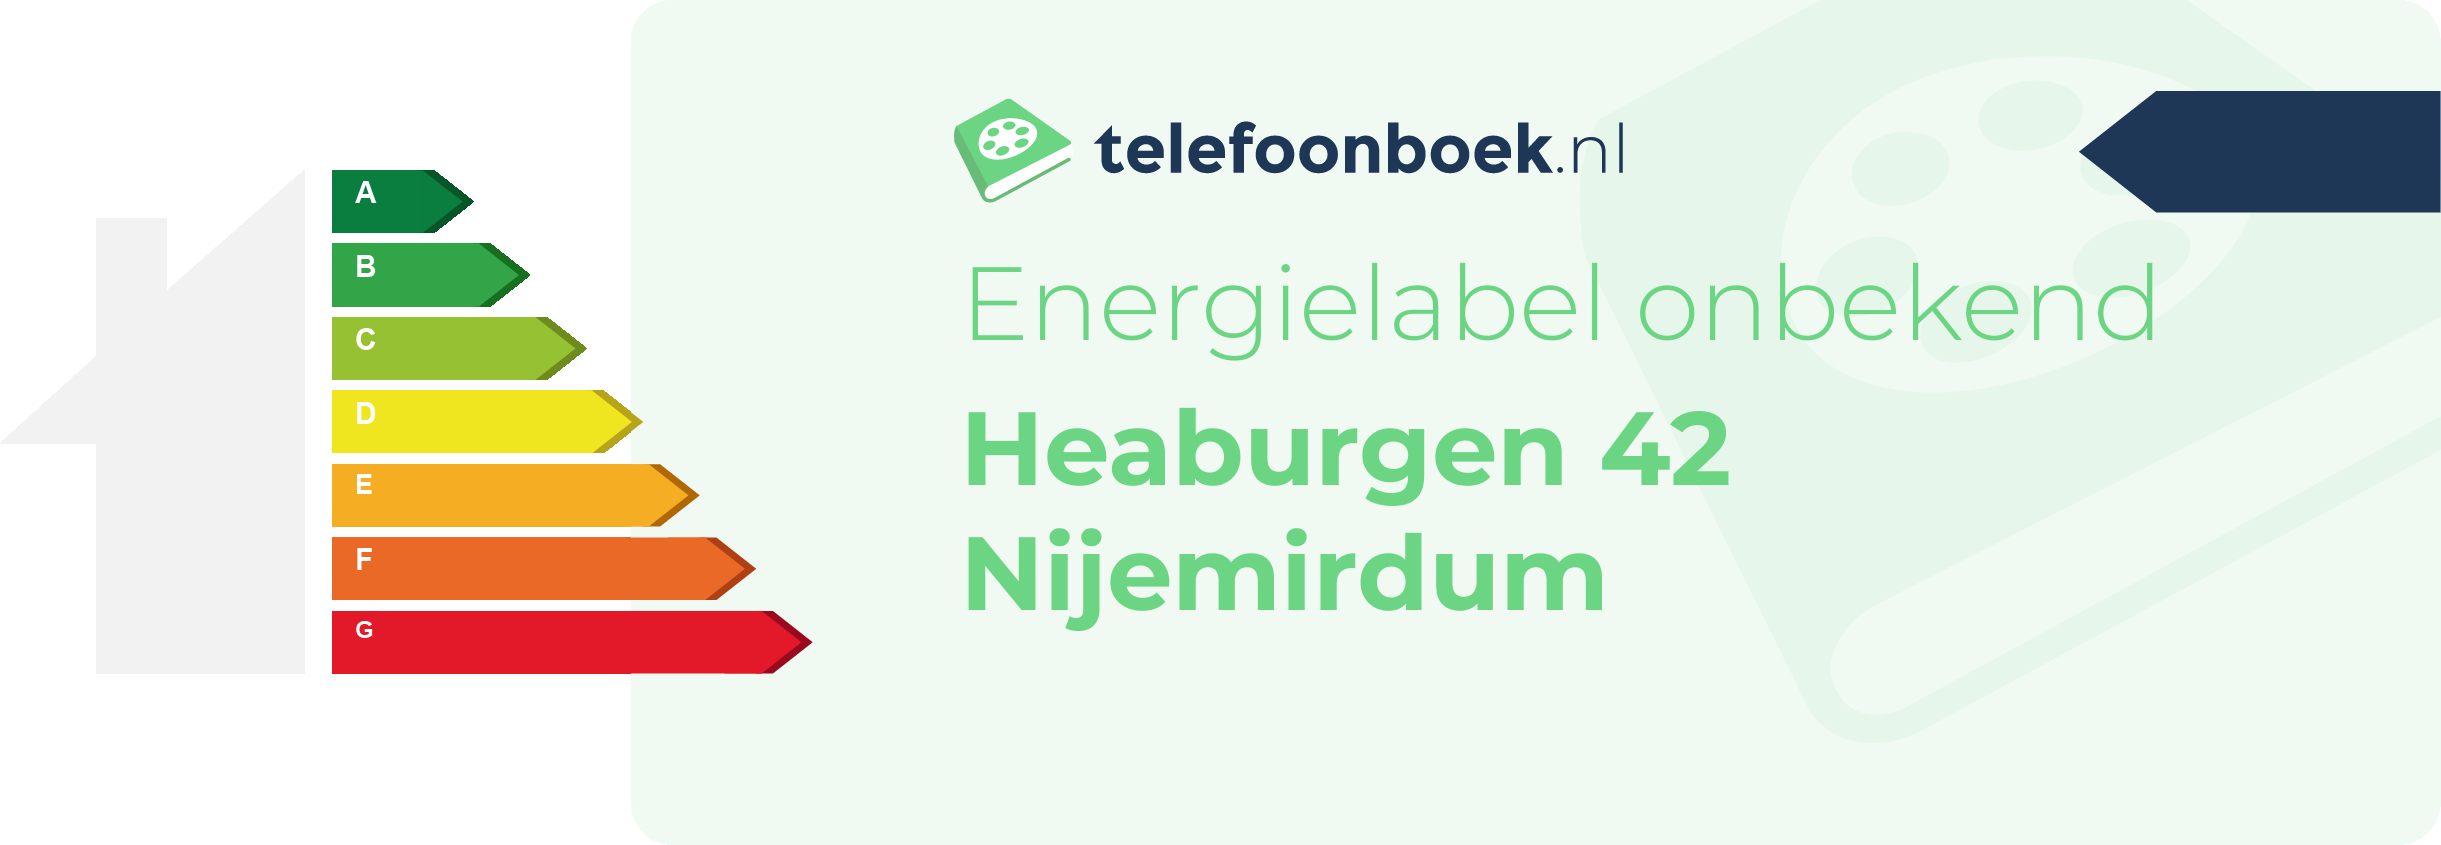 Energielabel Heaburgen 42 Nijemirdum